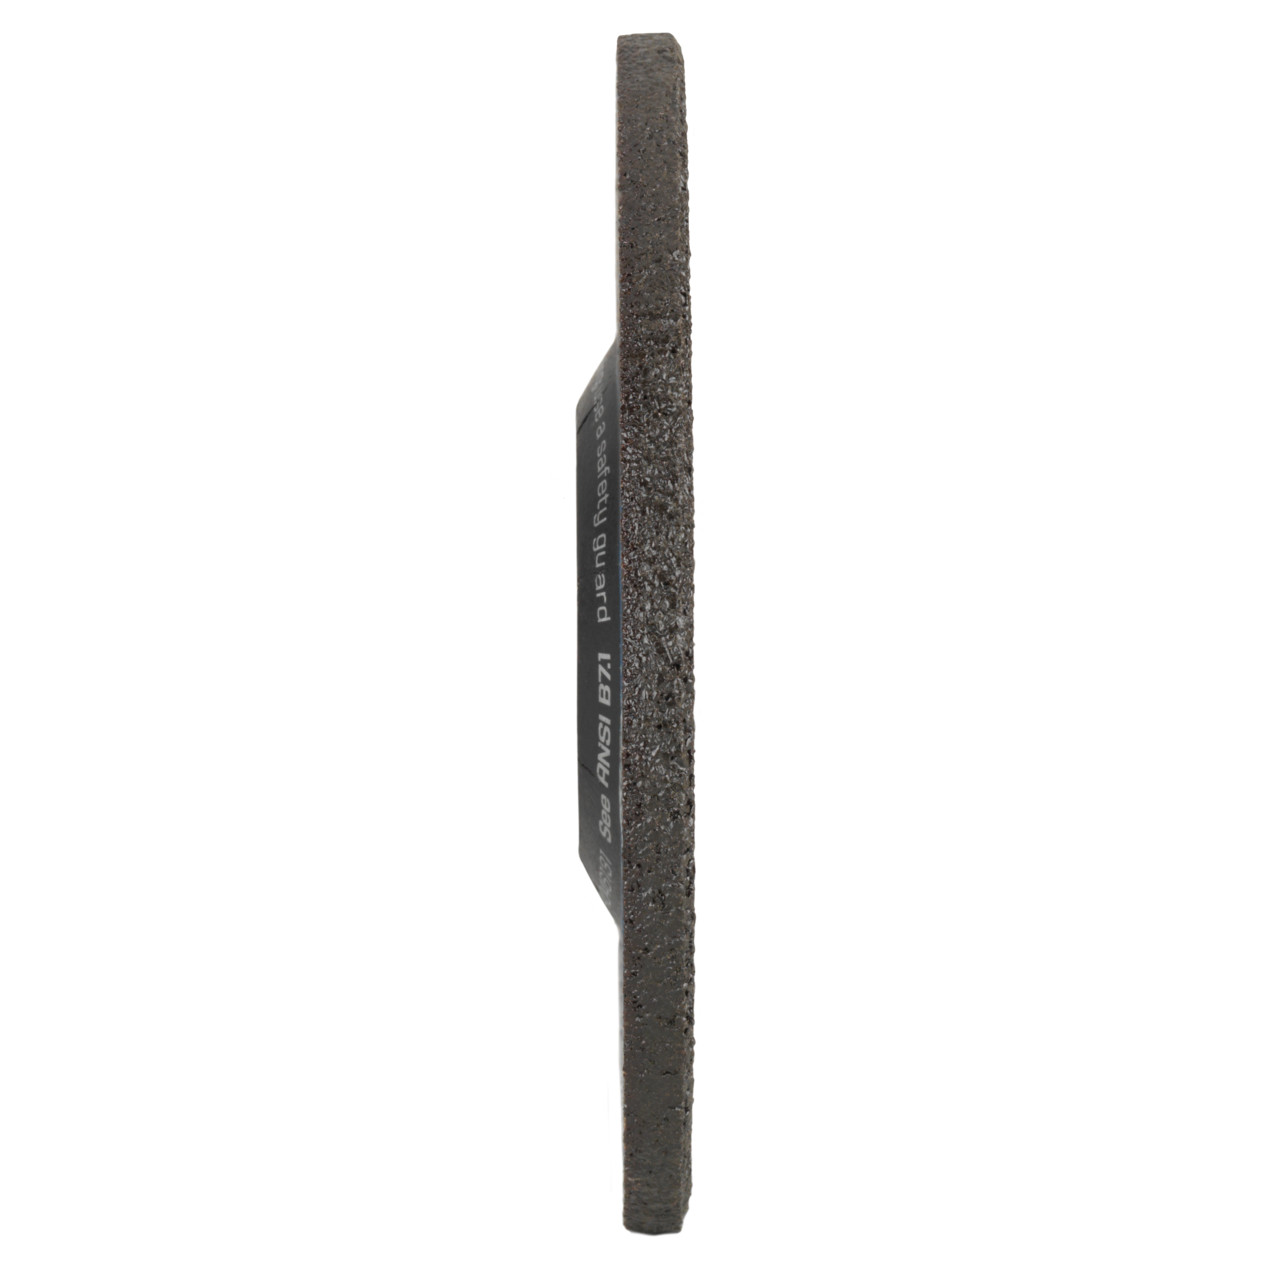 TYROLIT slijpschijf DxUxH 150x4x22,23 2in1 voor staal en roestvrij staal, vorm: 27 - offset-uitvoering, Art. 734378